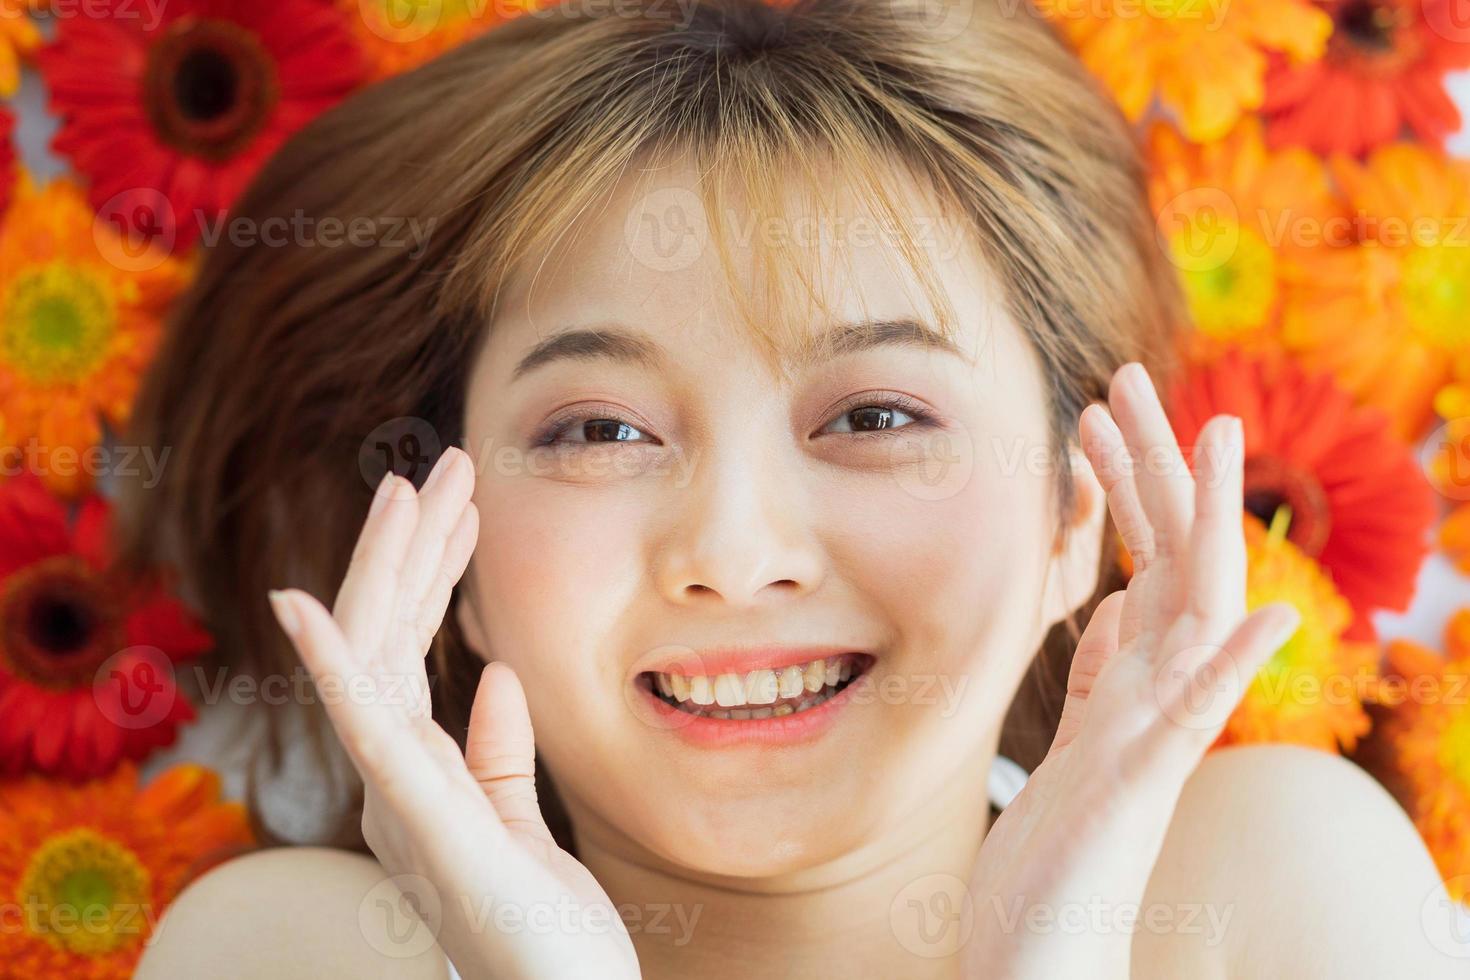 giovane ragazza sdraiata su un fiore con un'espressione felice foto